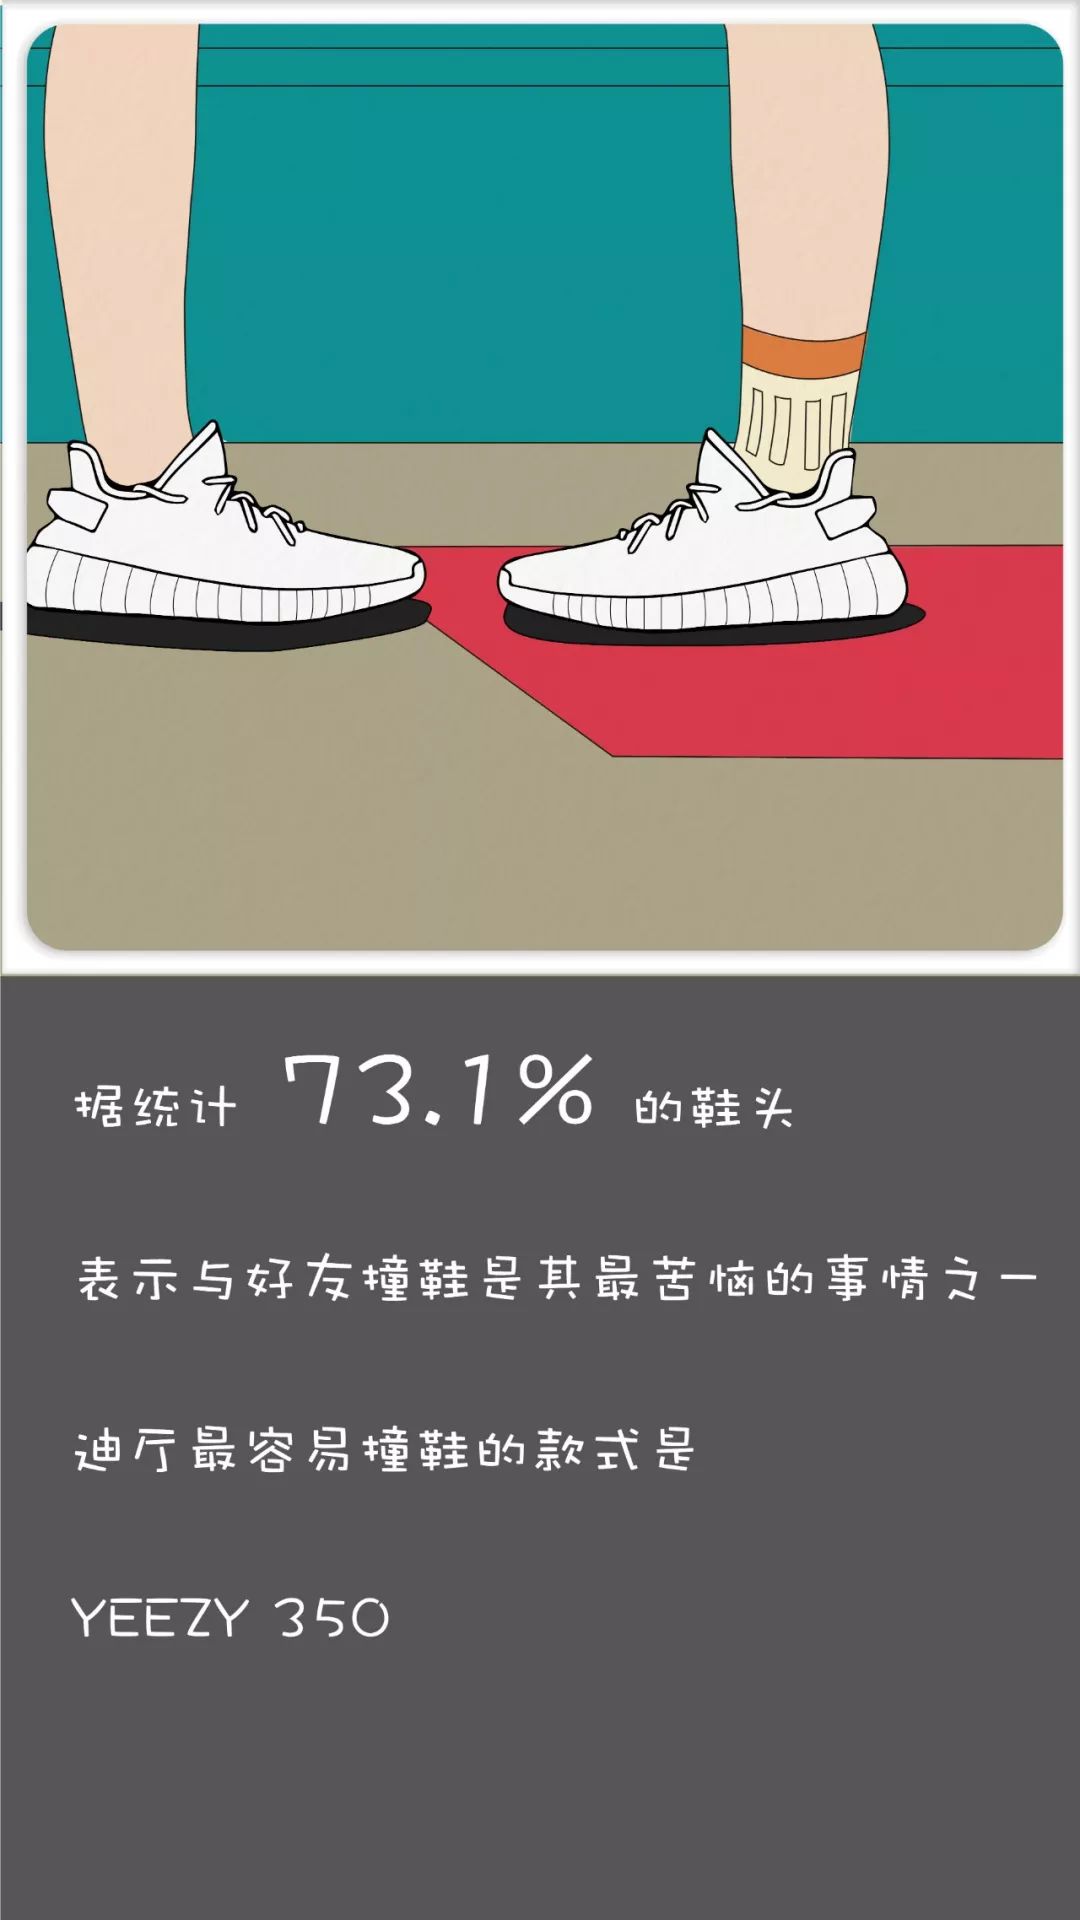 年轻情侣在鞋店试选高跟鞋-蓝牛仔影像-中国原创广告影像素材